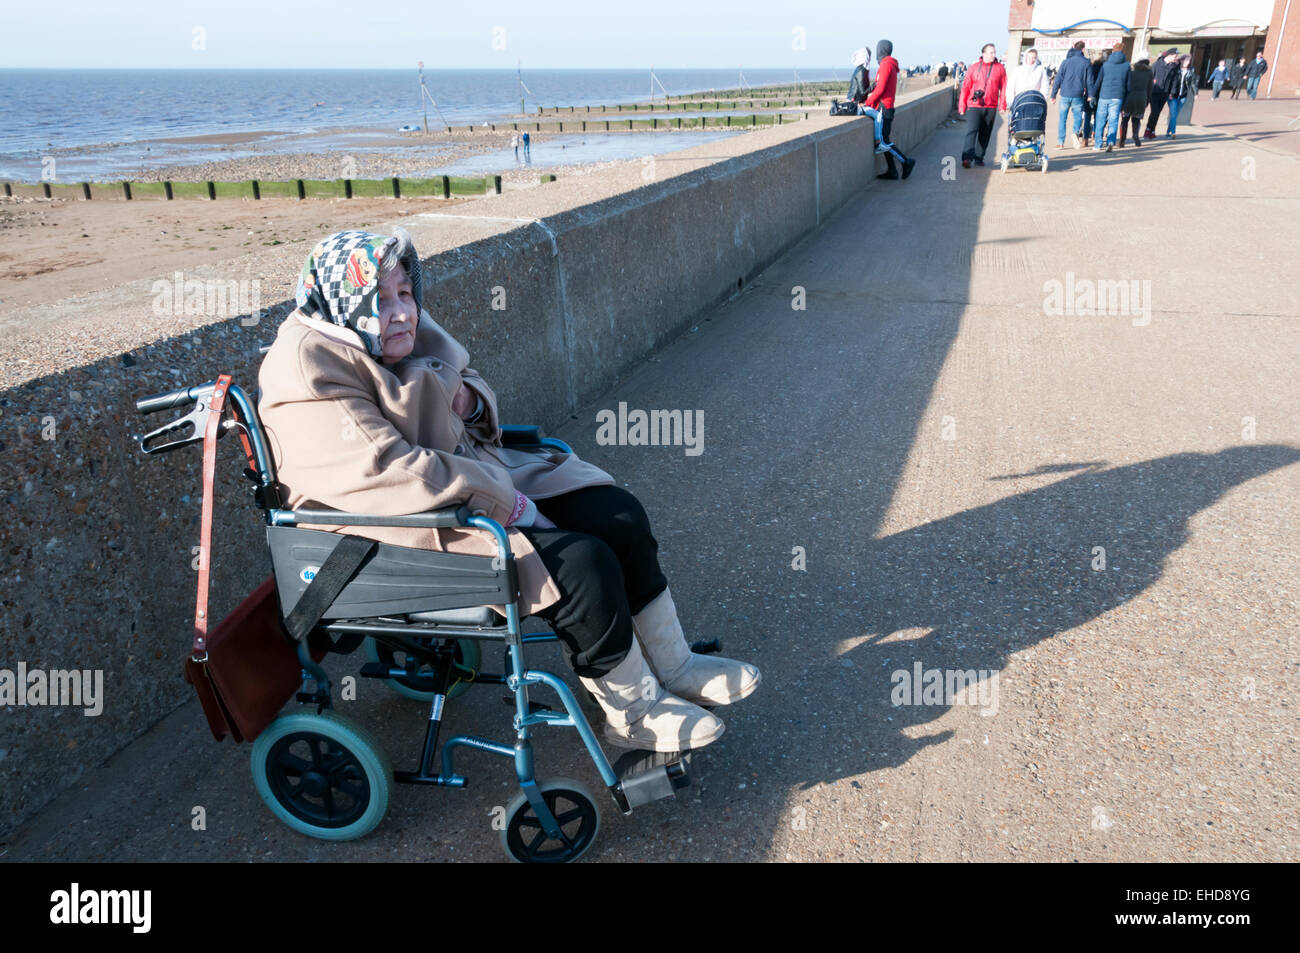 An elderly lady in a wheelchair keeps warm in the winter sunshine on Hunstanton promenade. MODEL RELEASED. Stock Photo